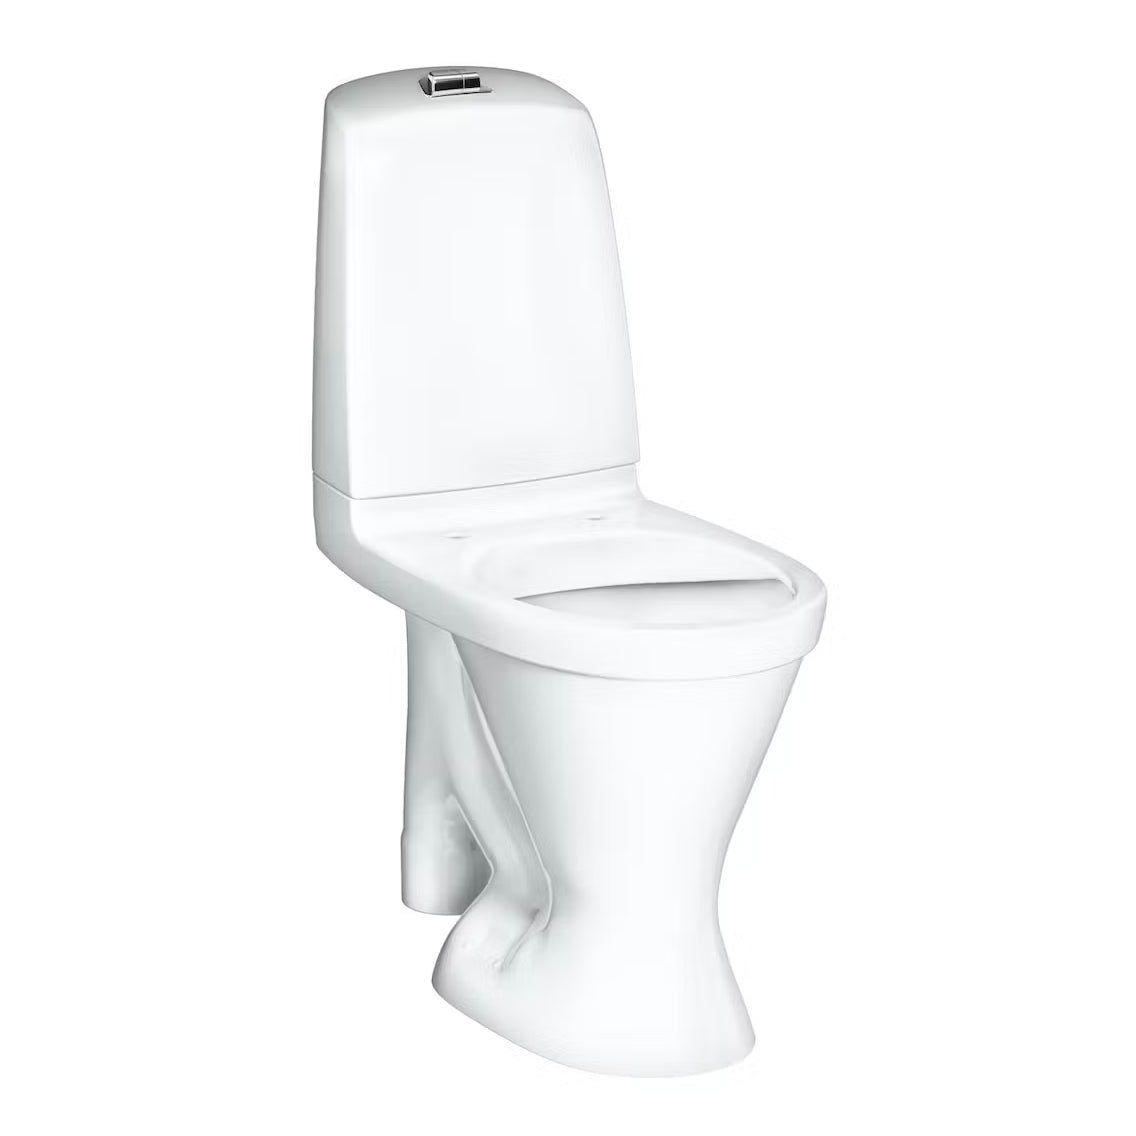 WC-istuin Gustavsberg Nautic 1596 Hygienic Flush korkea ISO 1-T - KarelianStore